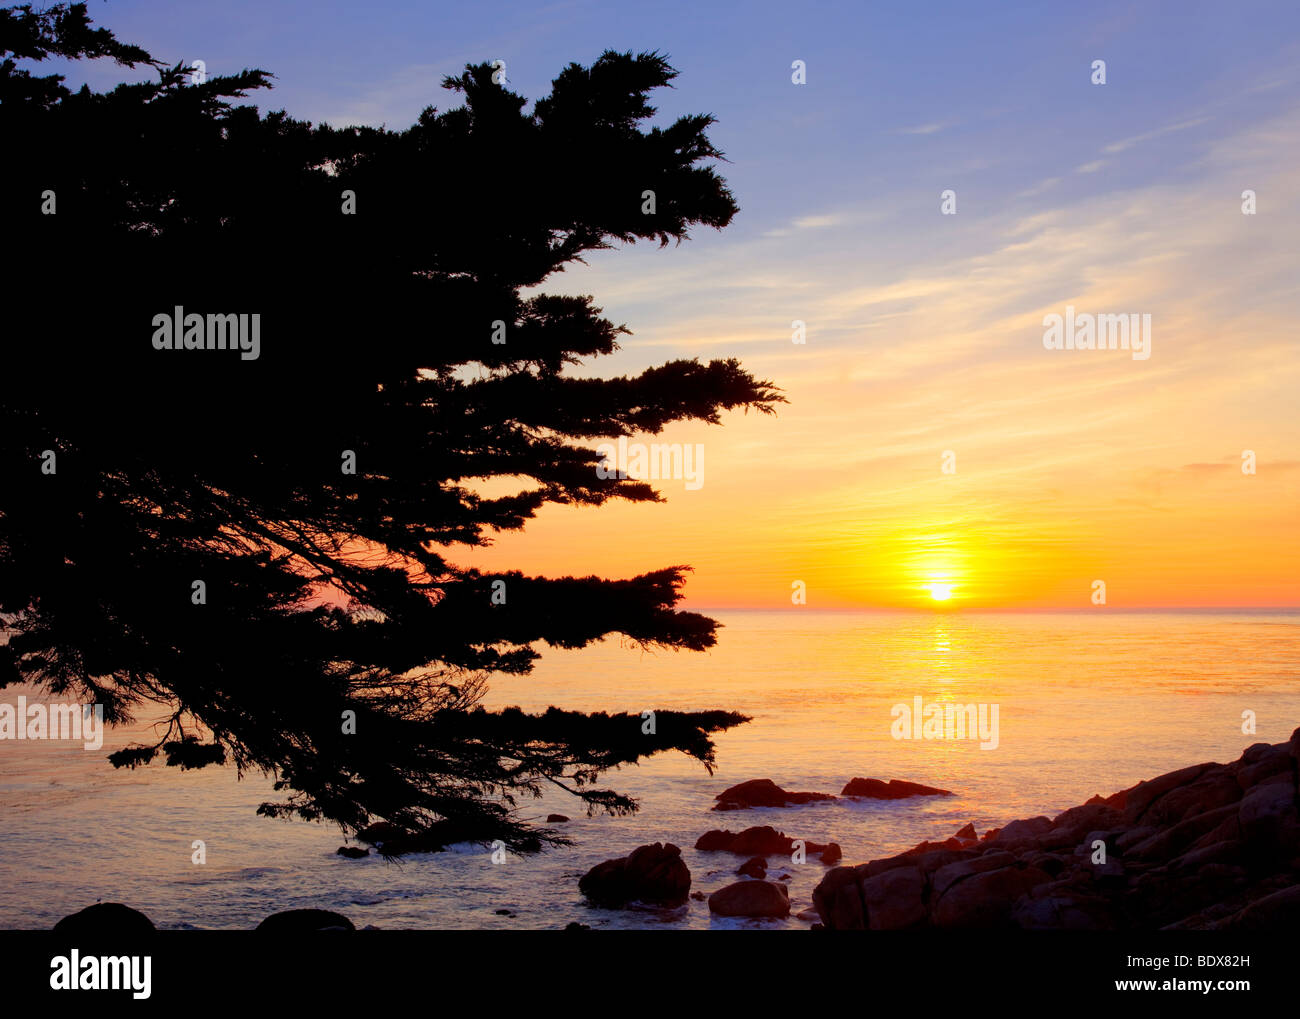 Sonnenuntergang und Monterey-Zypresse Baum. 17 Mile Drive. Pebble Beach, Kalifornien Stockfoto